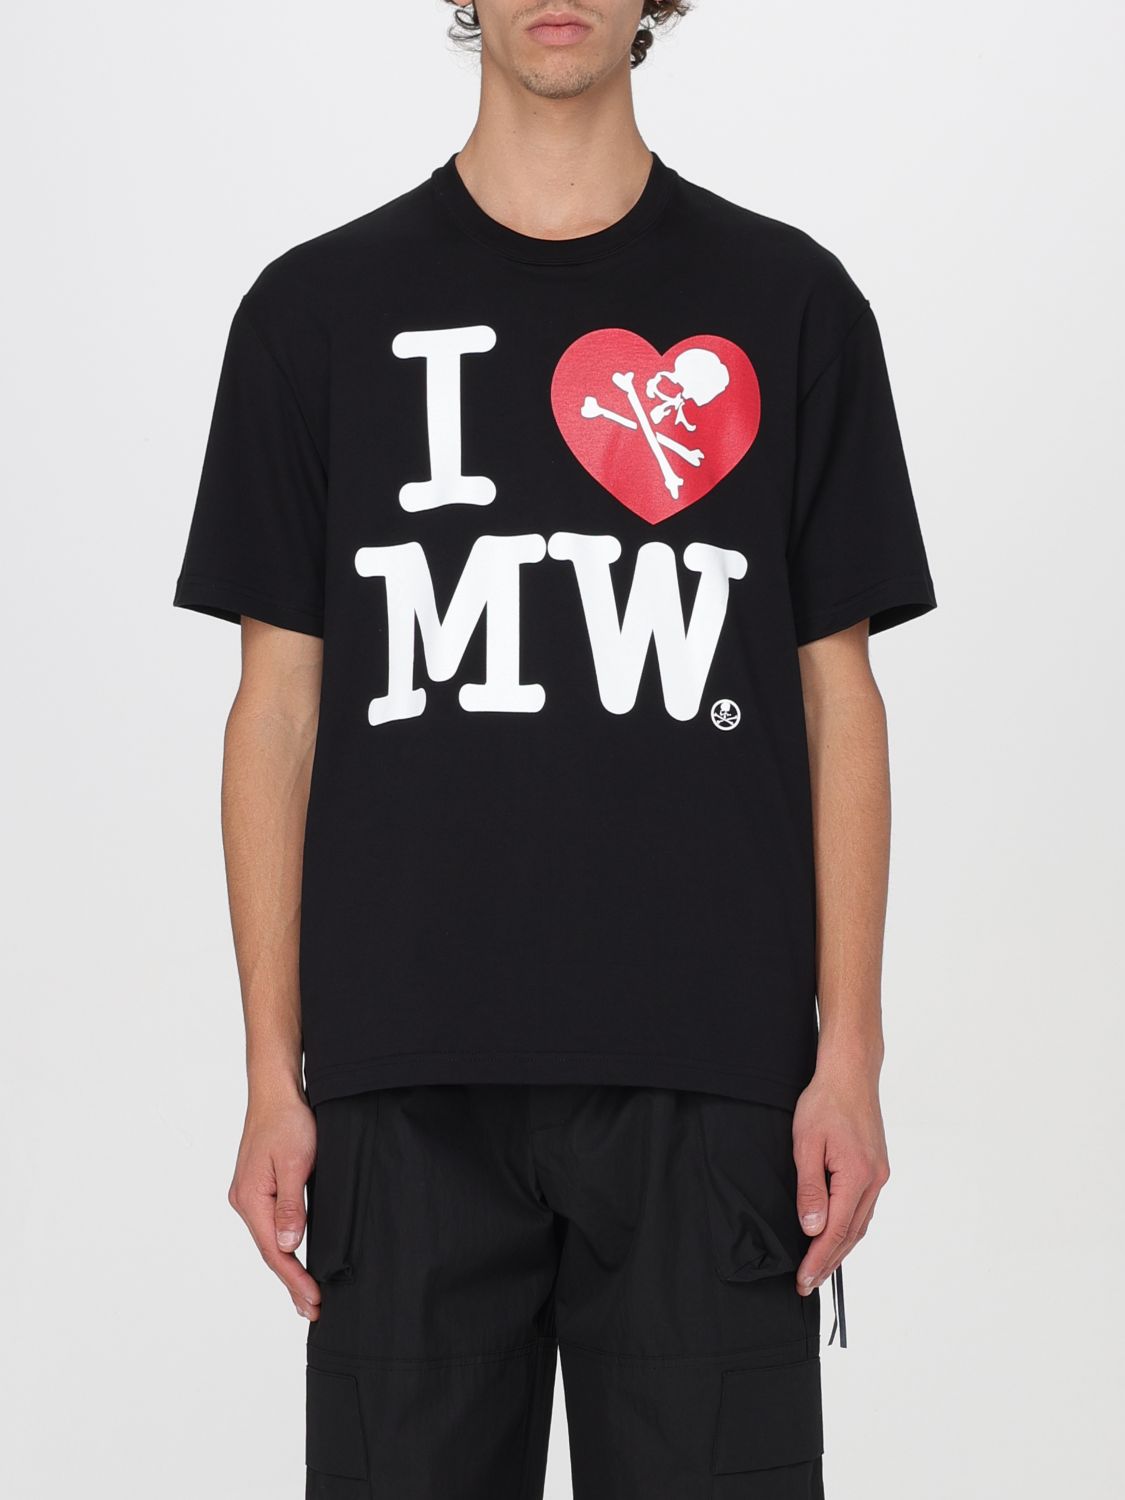 Shop Mastermind Japan T-shirt Mastermind World Men Color Black